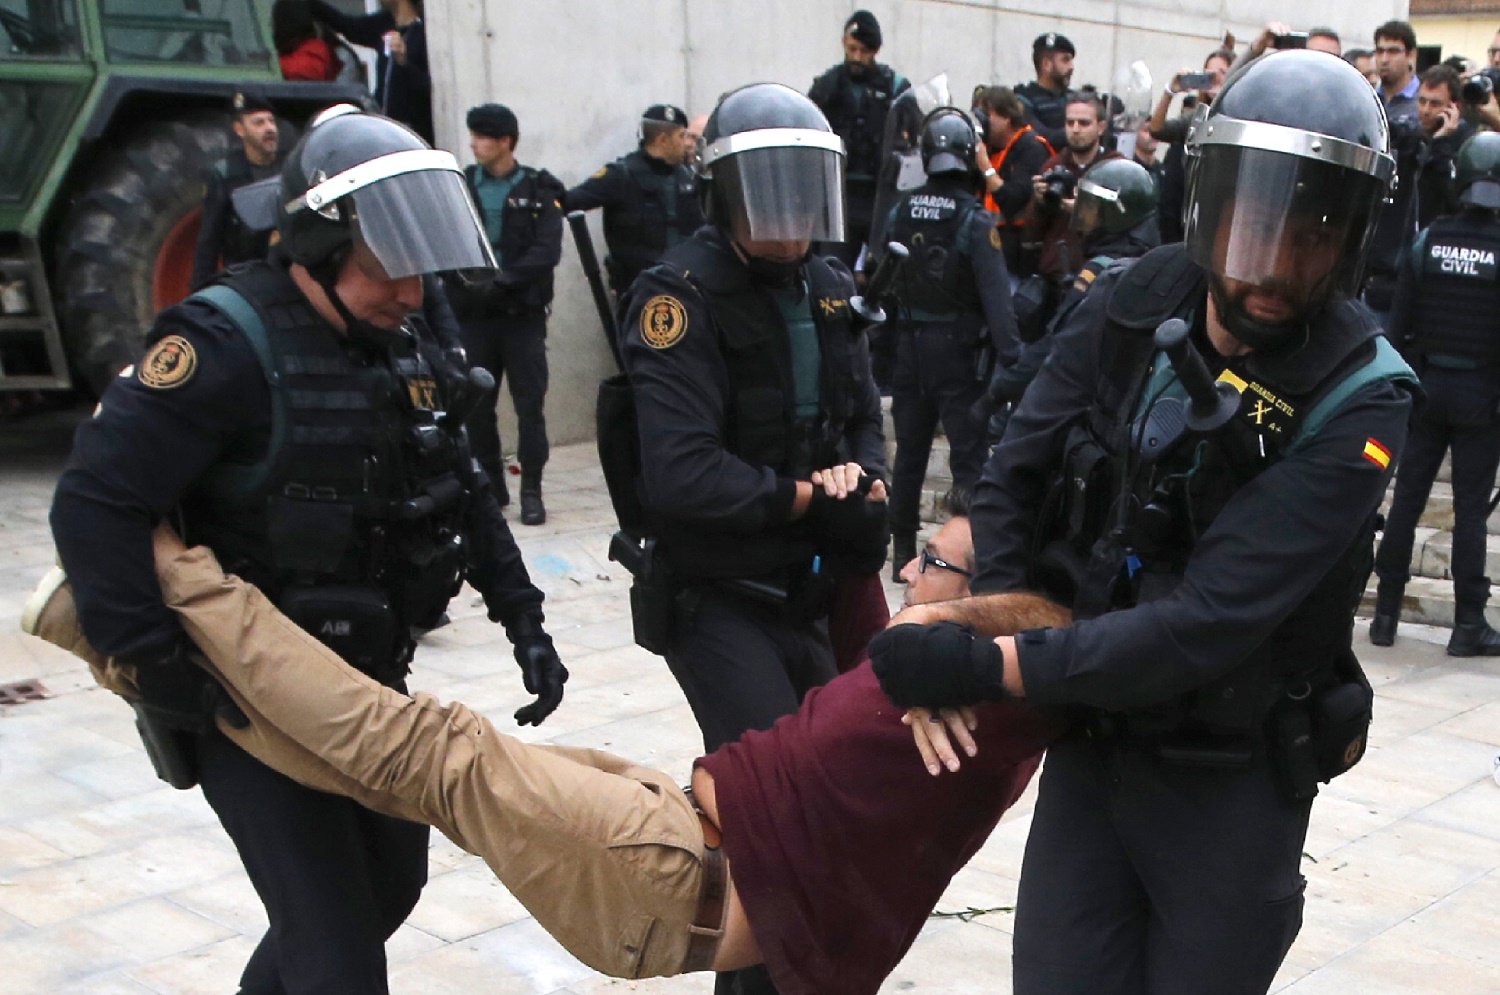 1506868865_833_fuerte-represion-policial-en-cataluna-durante-referendum-de-independencia-fotos-y-videos